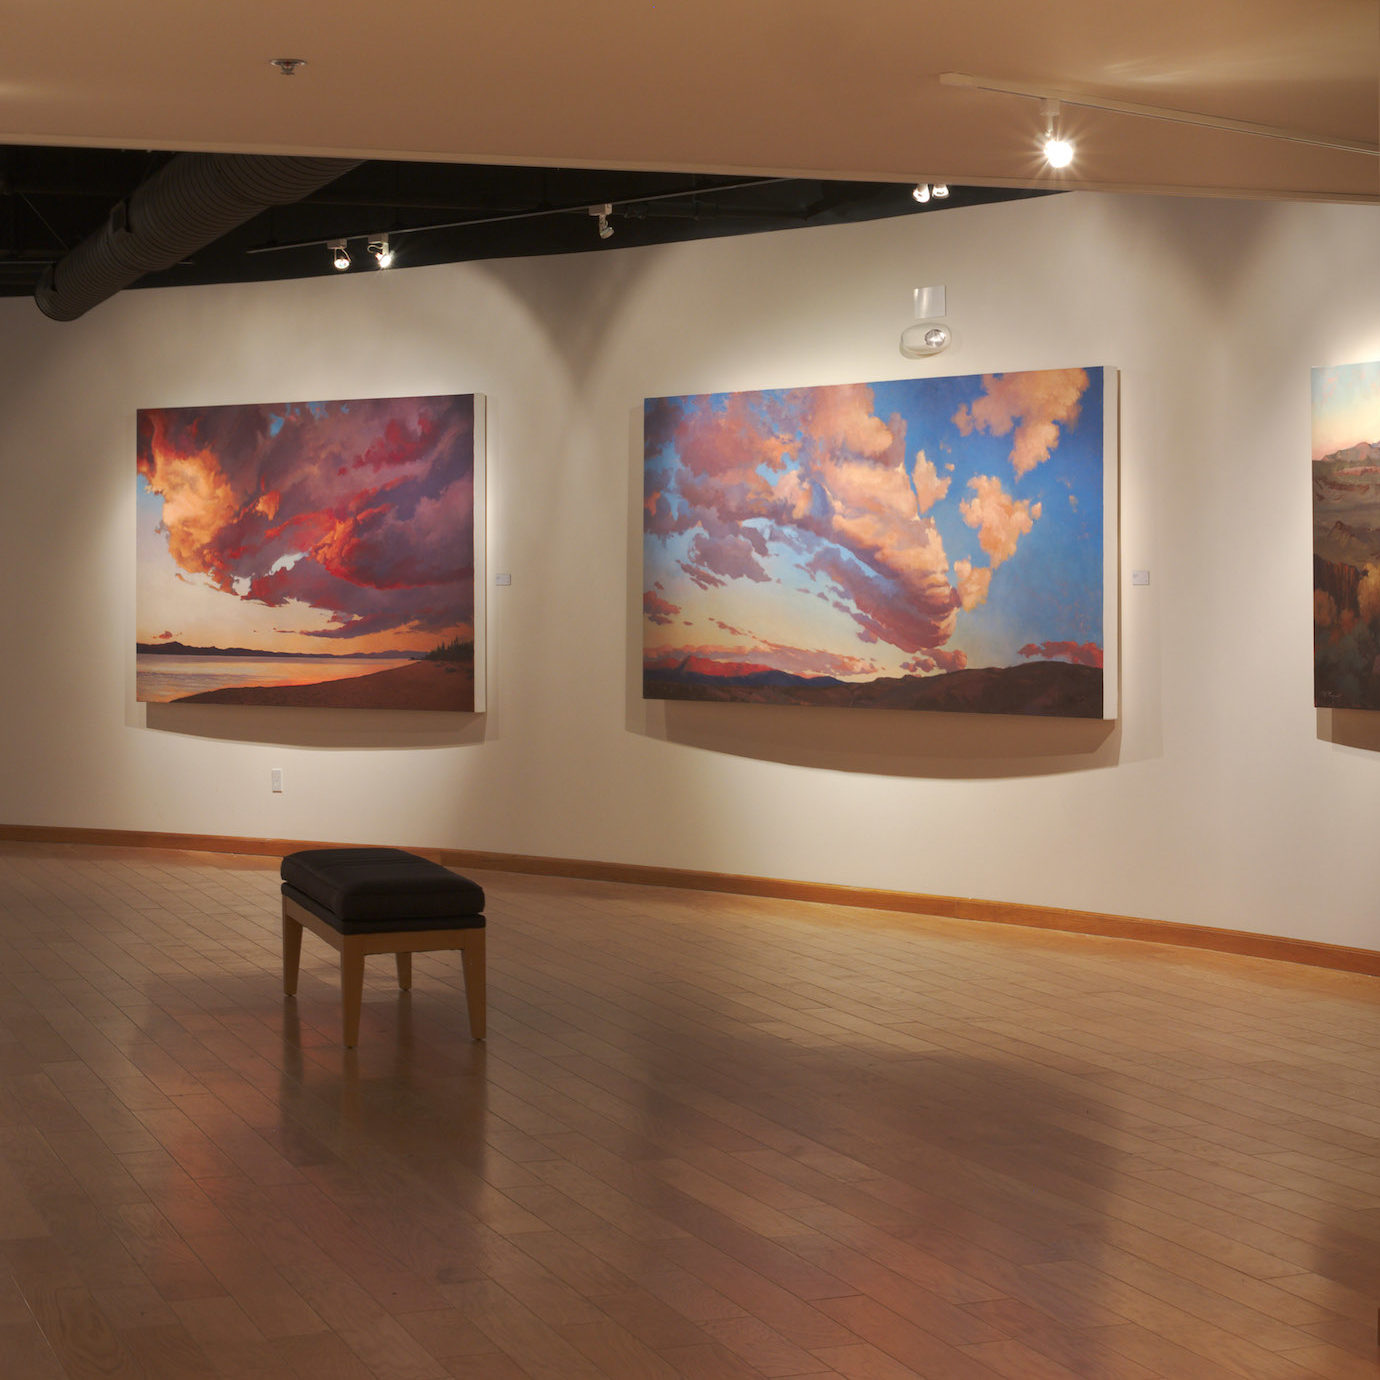 Western Sky Paintings Brighten Main Gallery